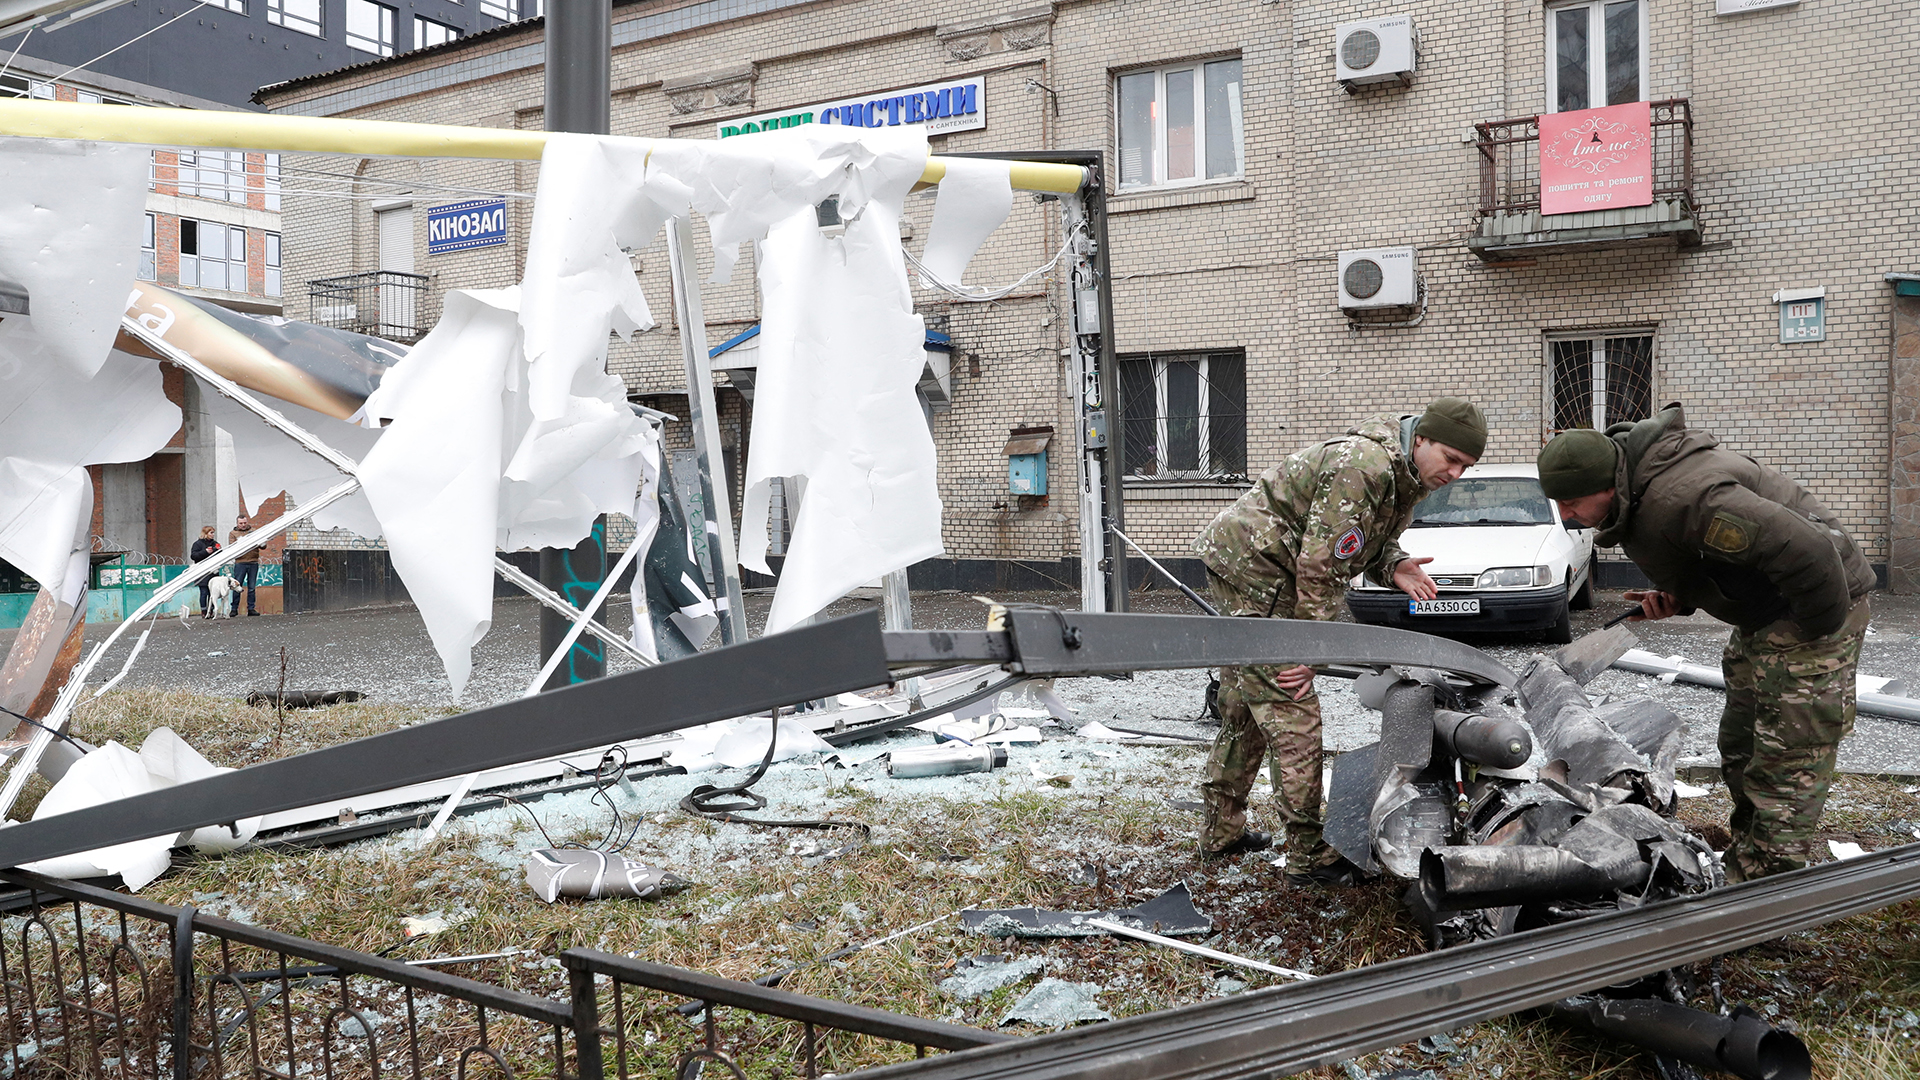 Polizisten inspizieren in Kiew die Überreste einer Rakete, die auf die Straße gefallen ist. | REUTERS